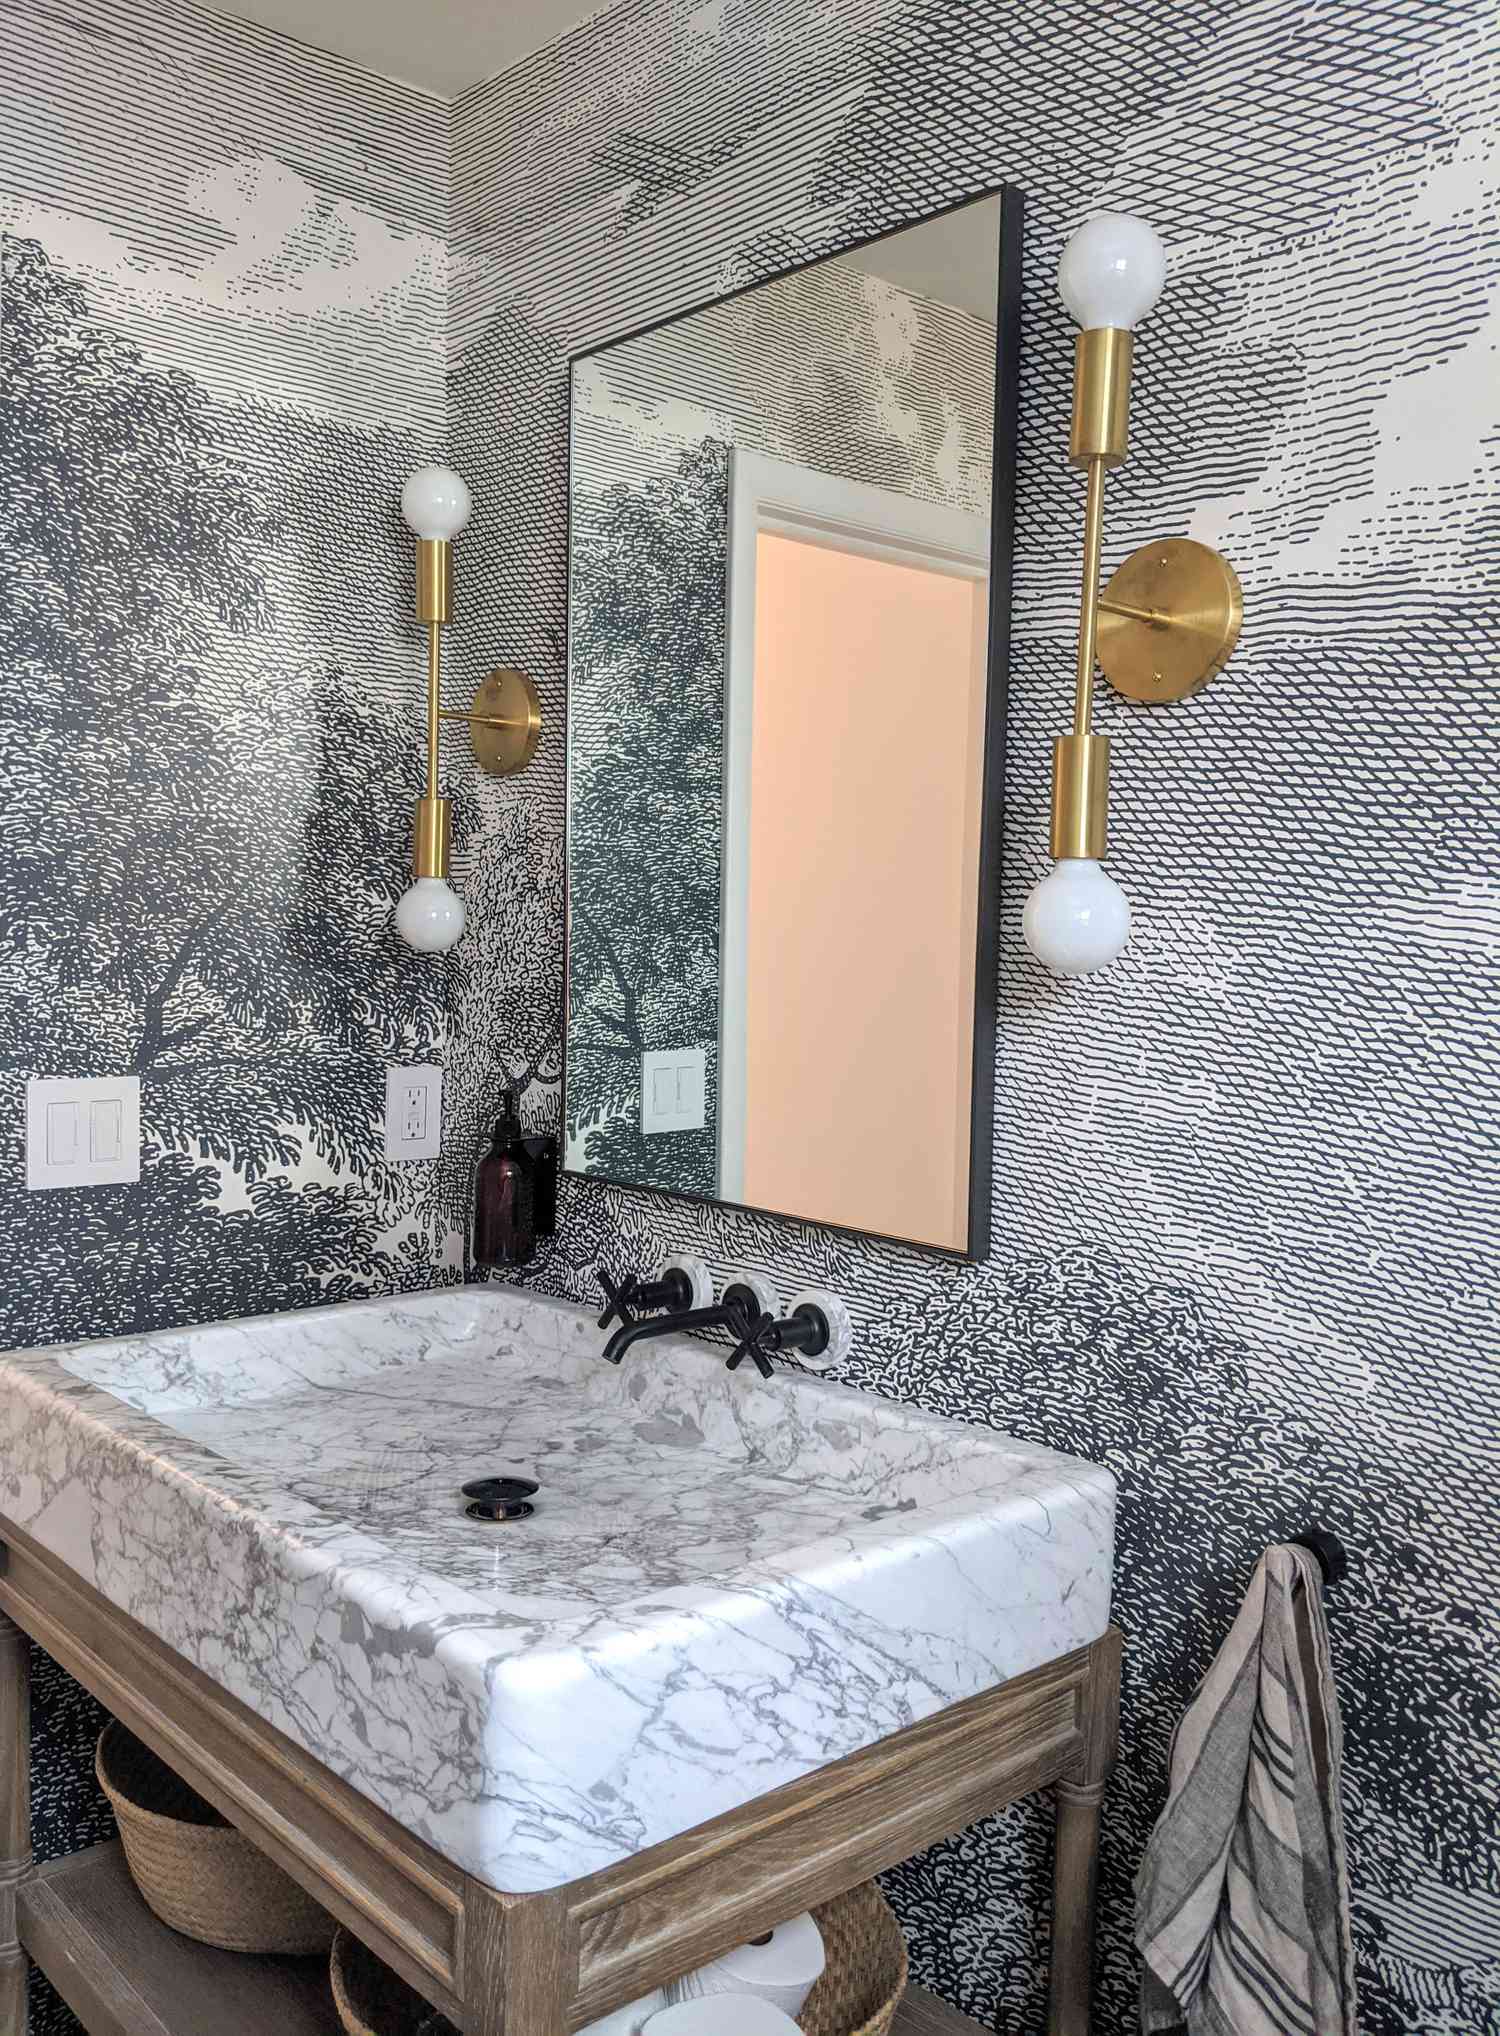 Une salle de bain dans la maison de Molly et Fritz à Shaker Heights présente un traitement graphique des murs, un évier rectangulaire en marbre, une quincaillerie noire et un éclairage en laiton